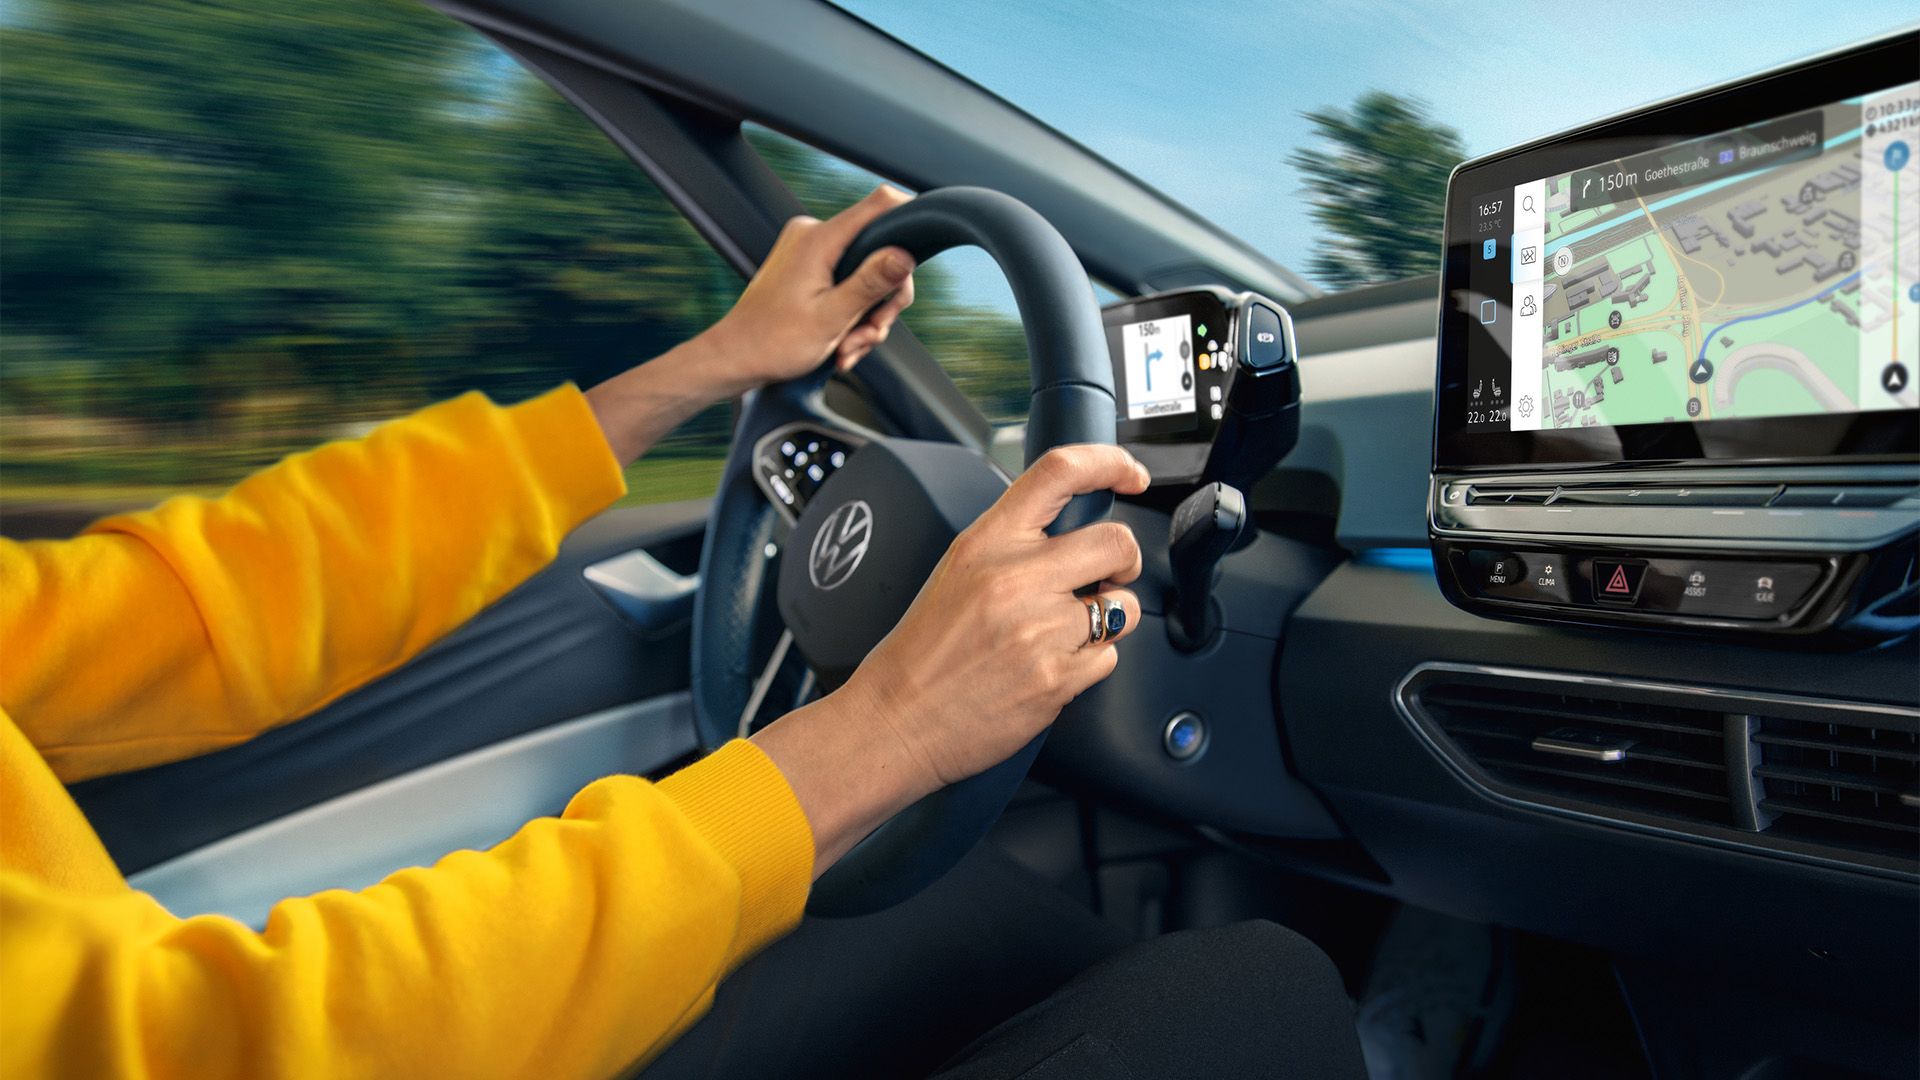 Detailaufnahme des Lenkrads und des Touchscreens im VW ID.3, Arme des Fahrers am Lenkrad sind zu sehen